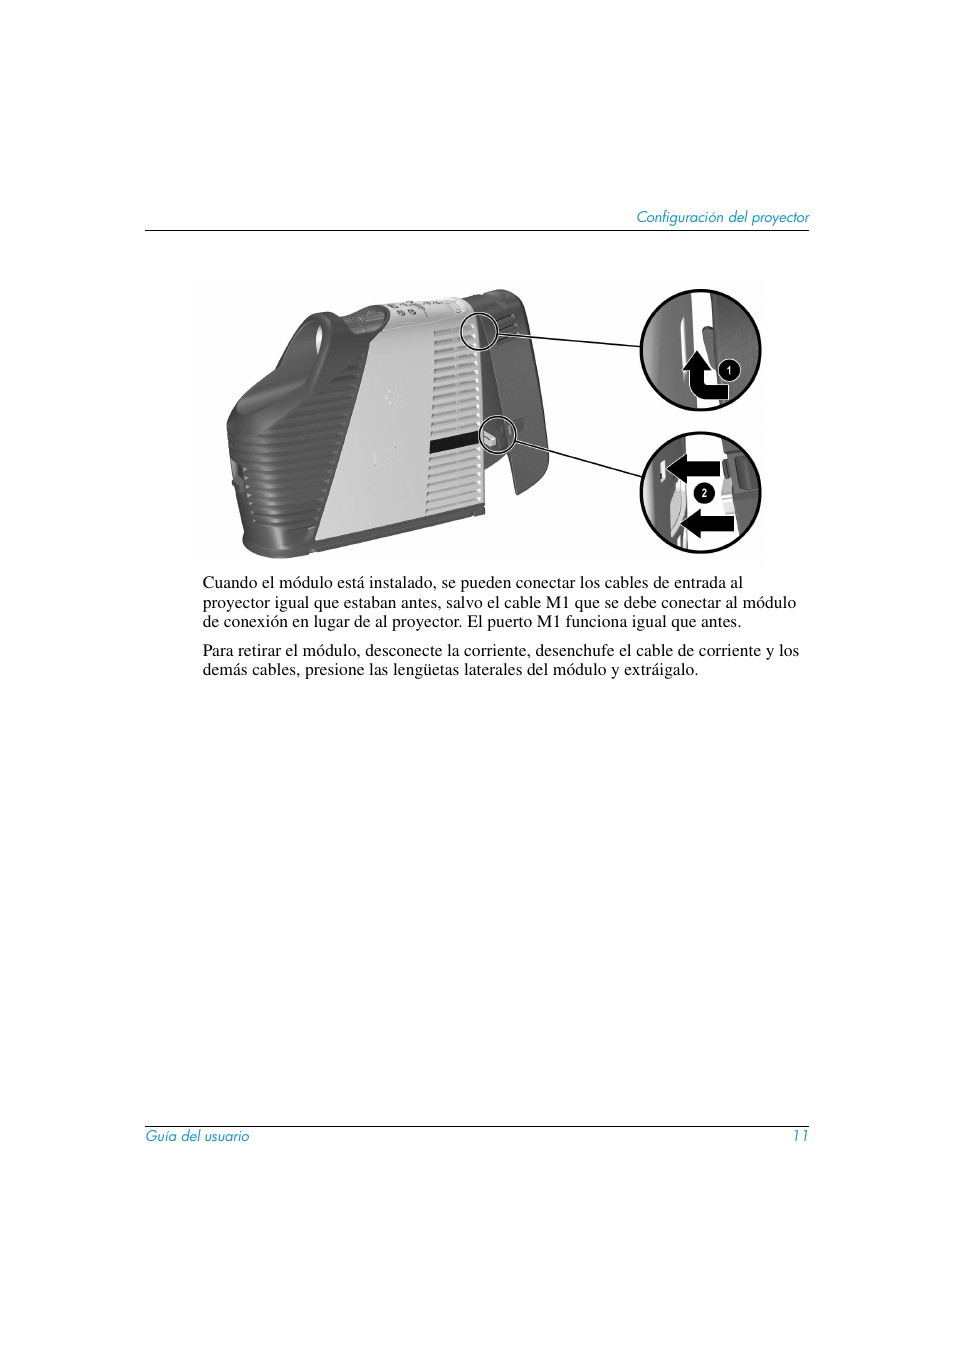 HP Proyector digital HP mp3130 Manual del usuario | Página 11 / 72